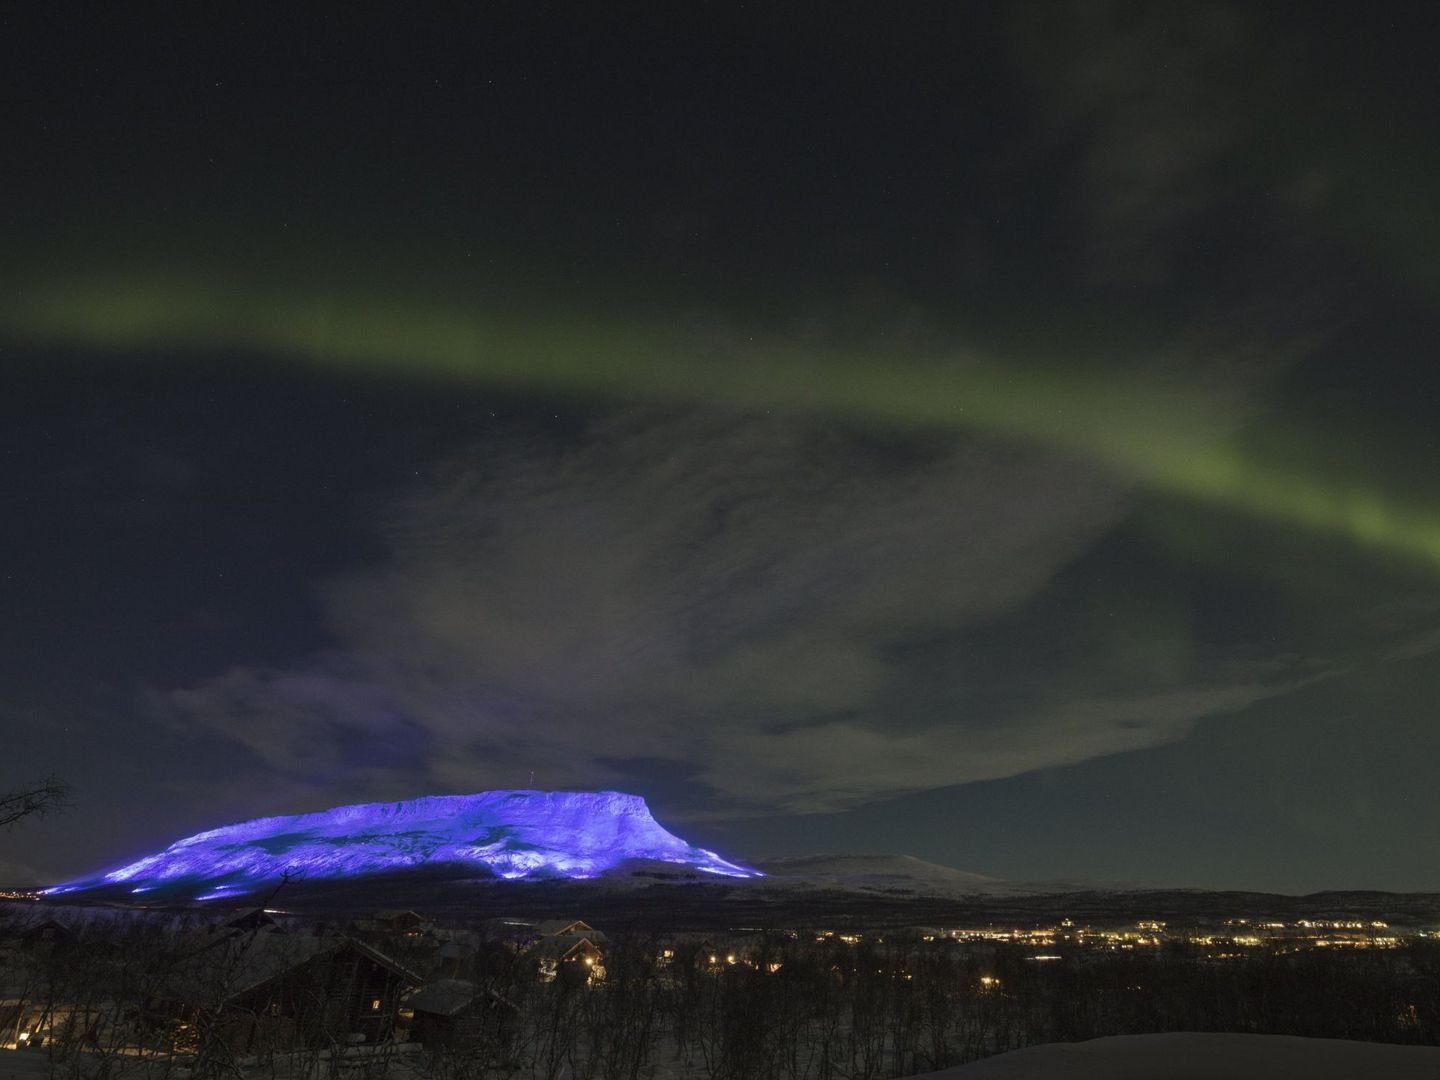 Vista del monte Saana en Lappland iluminado durante la celebración del aniversario de independencia de Finlandia, en Kilpisjärvi. (EFE)